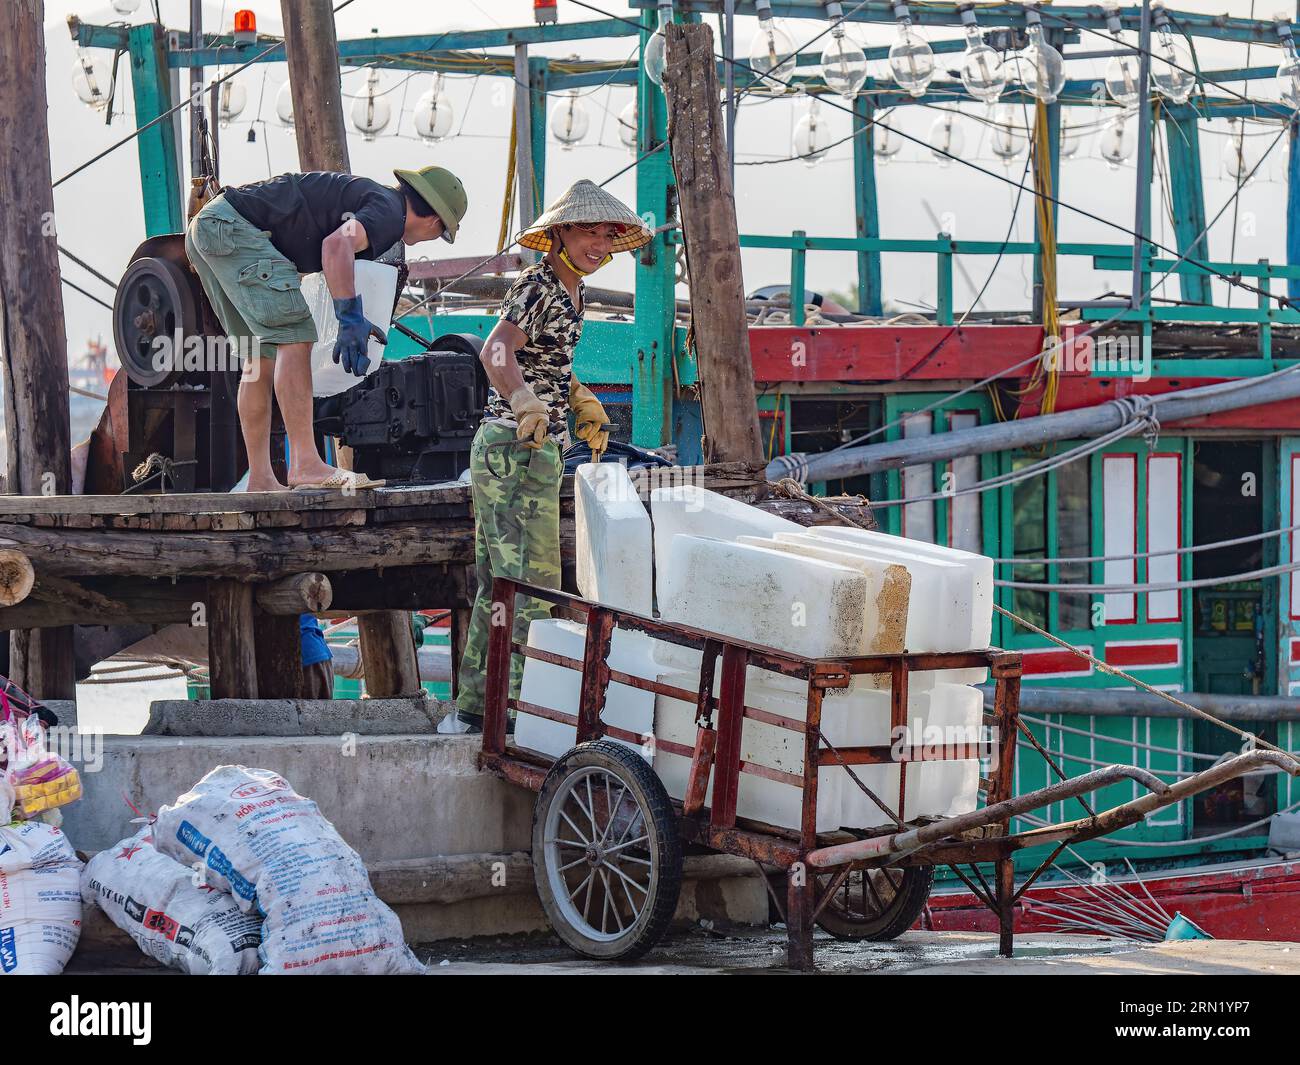 Des blocs de glace sont introduits dans un concasseur lors de la livraison à des bateaux de pêche à Hai Thanh, un village de pêcheurs dans la province de Thanh Hoa au Vietnam. Banque D'Images